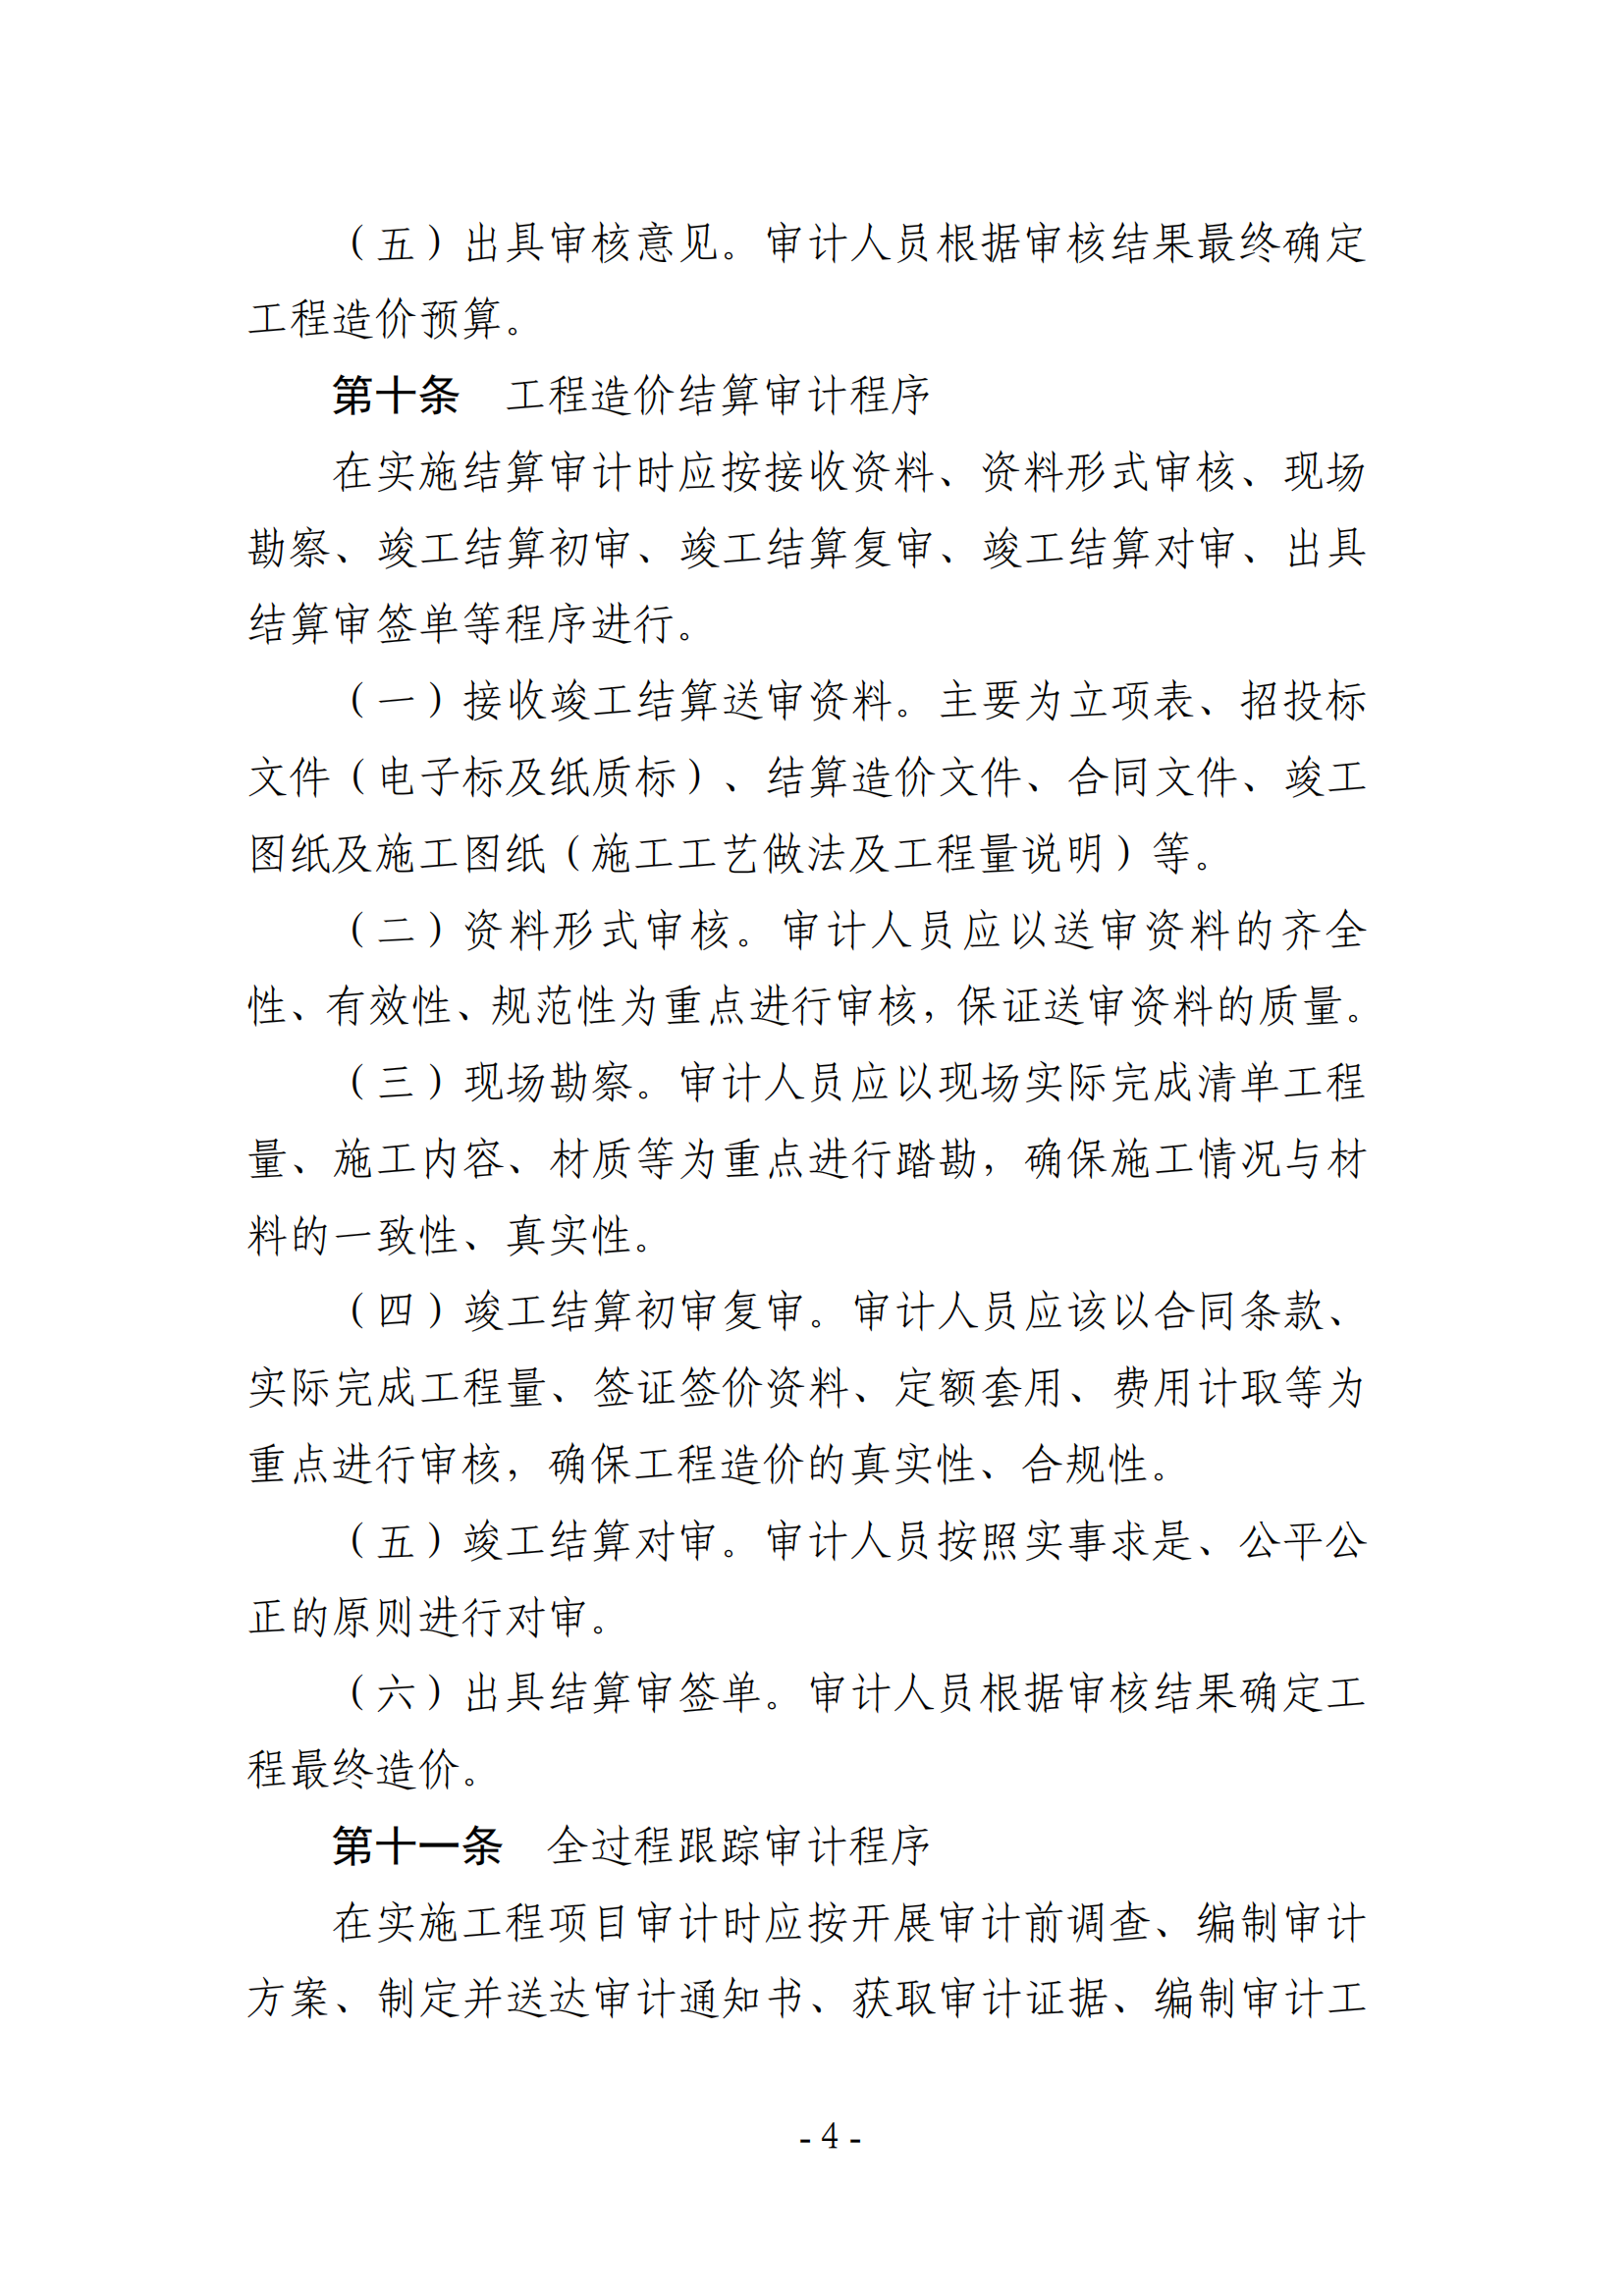 关于印发《湖南农业大学基建、修缮工程项目审计实施办法》的通知-正文_03.png